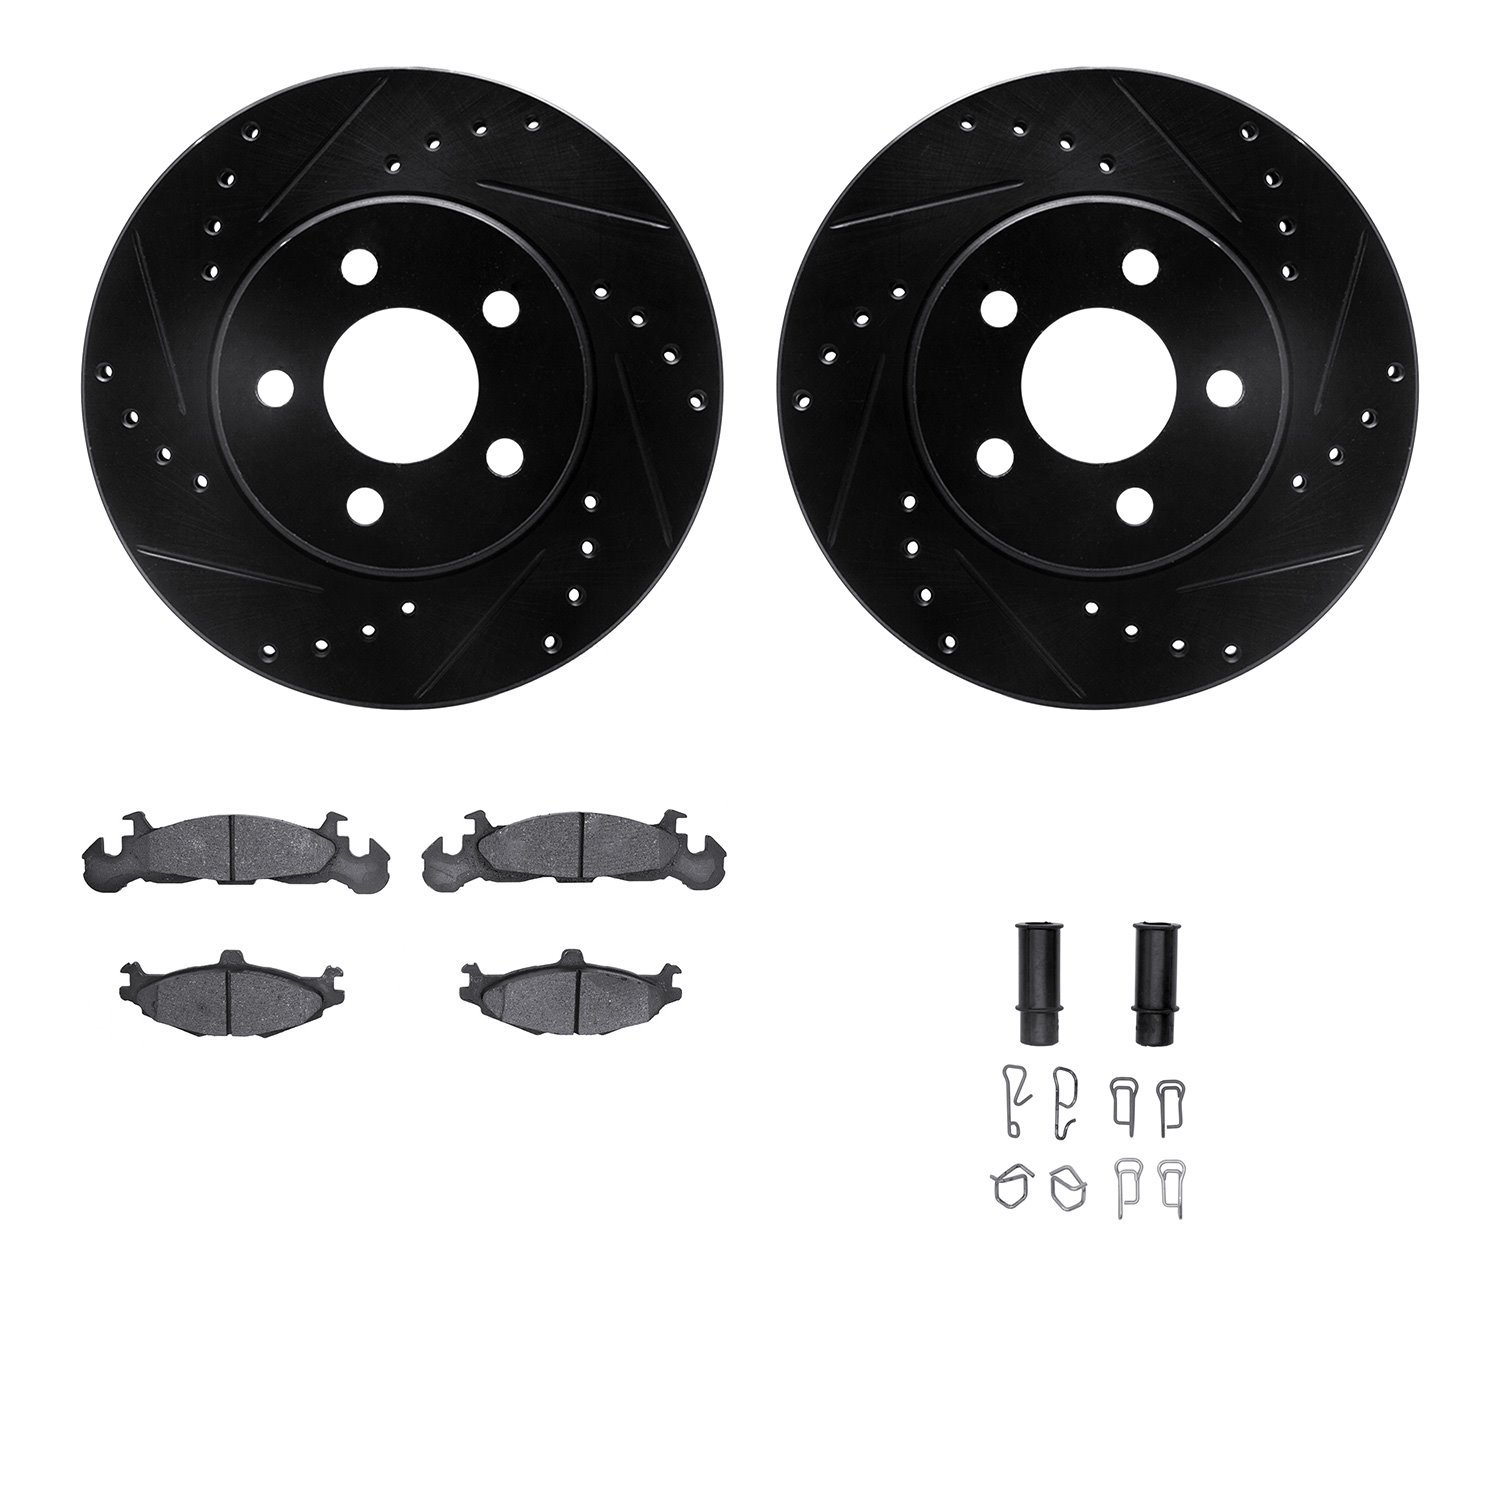 8512-40197 Drilled/Slotted Brake Rotors w/5000 Advanced Brake Pads Kit & Hardware [Black], 1989-1989 Mopar, Position: Front